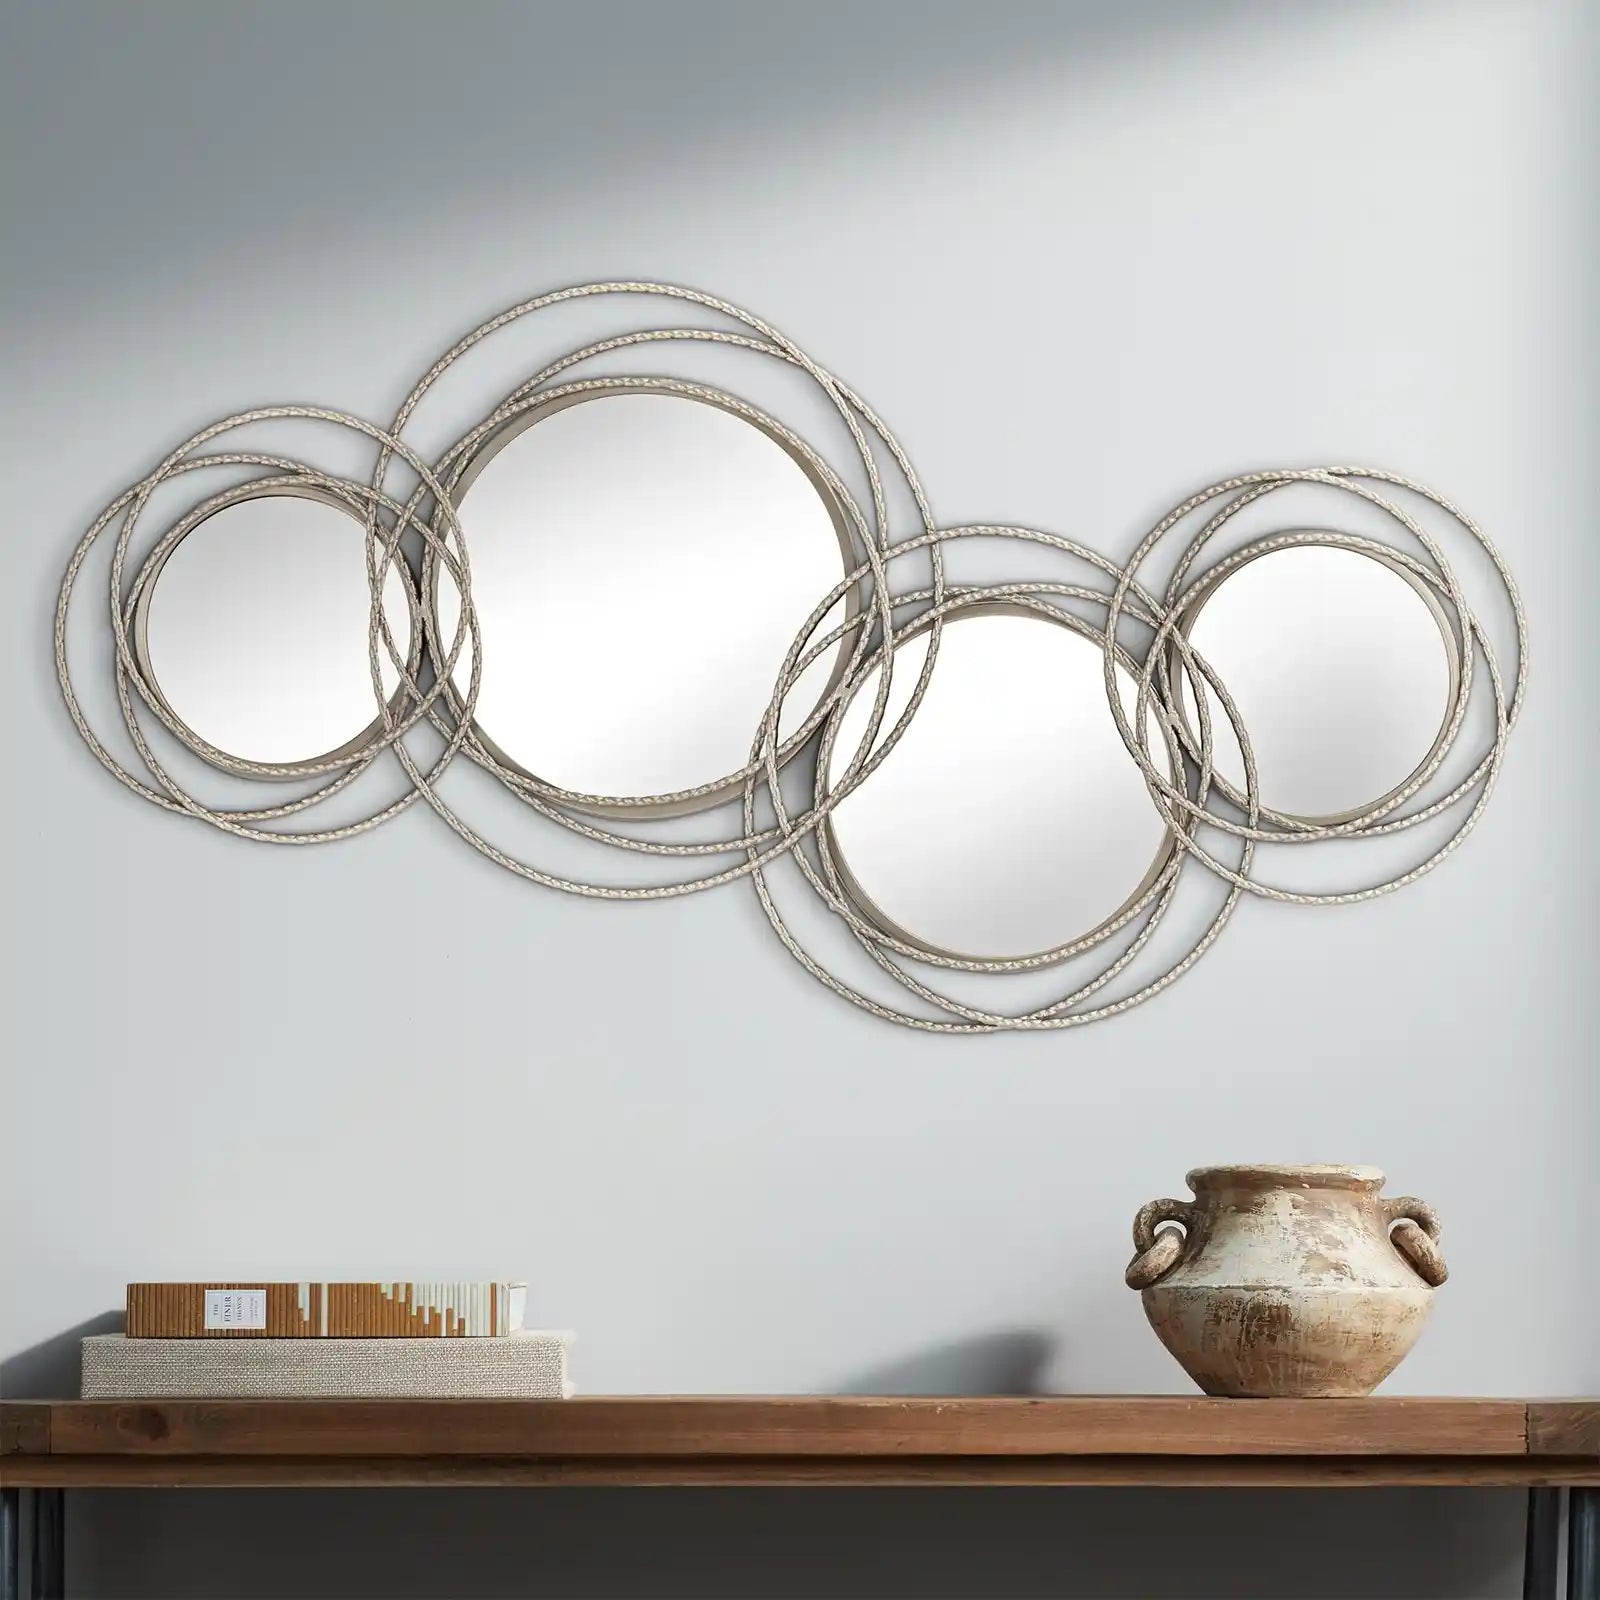 Marco de metal gris moderno del peltre del espejo decorativo de la pared de la vanidad redonda